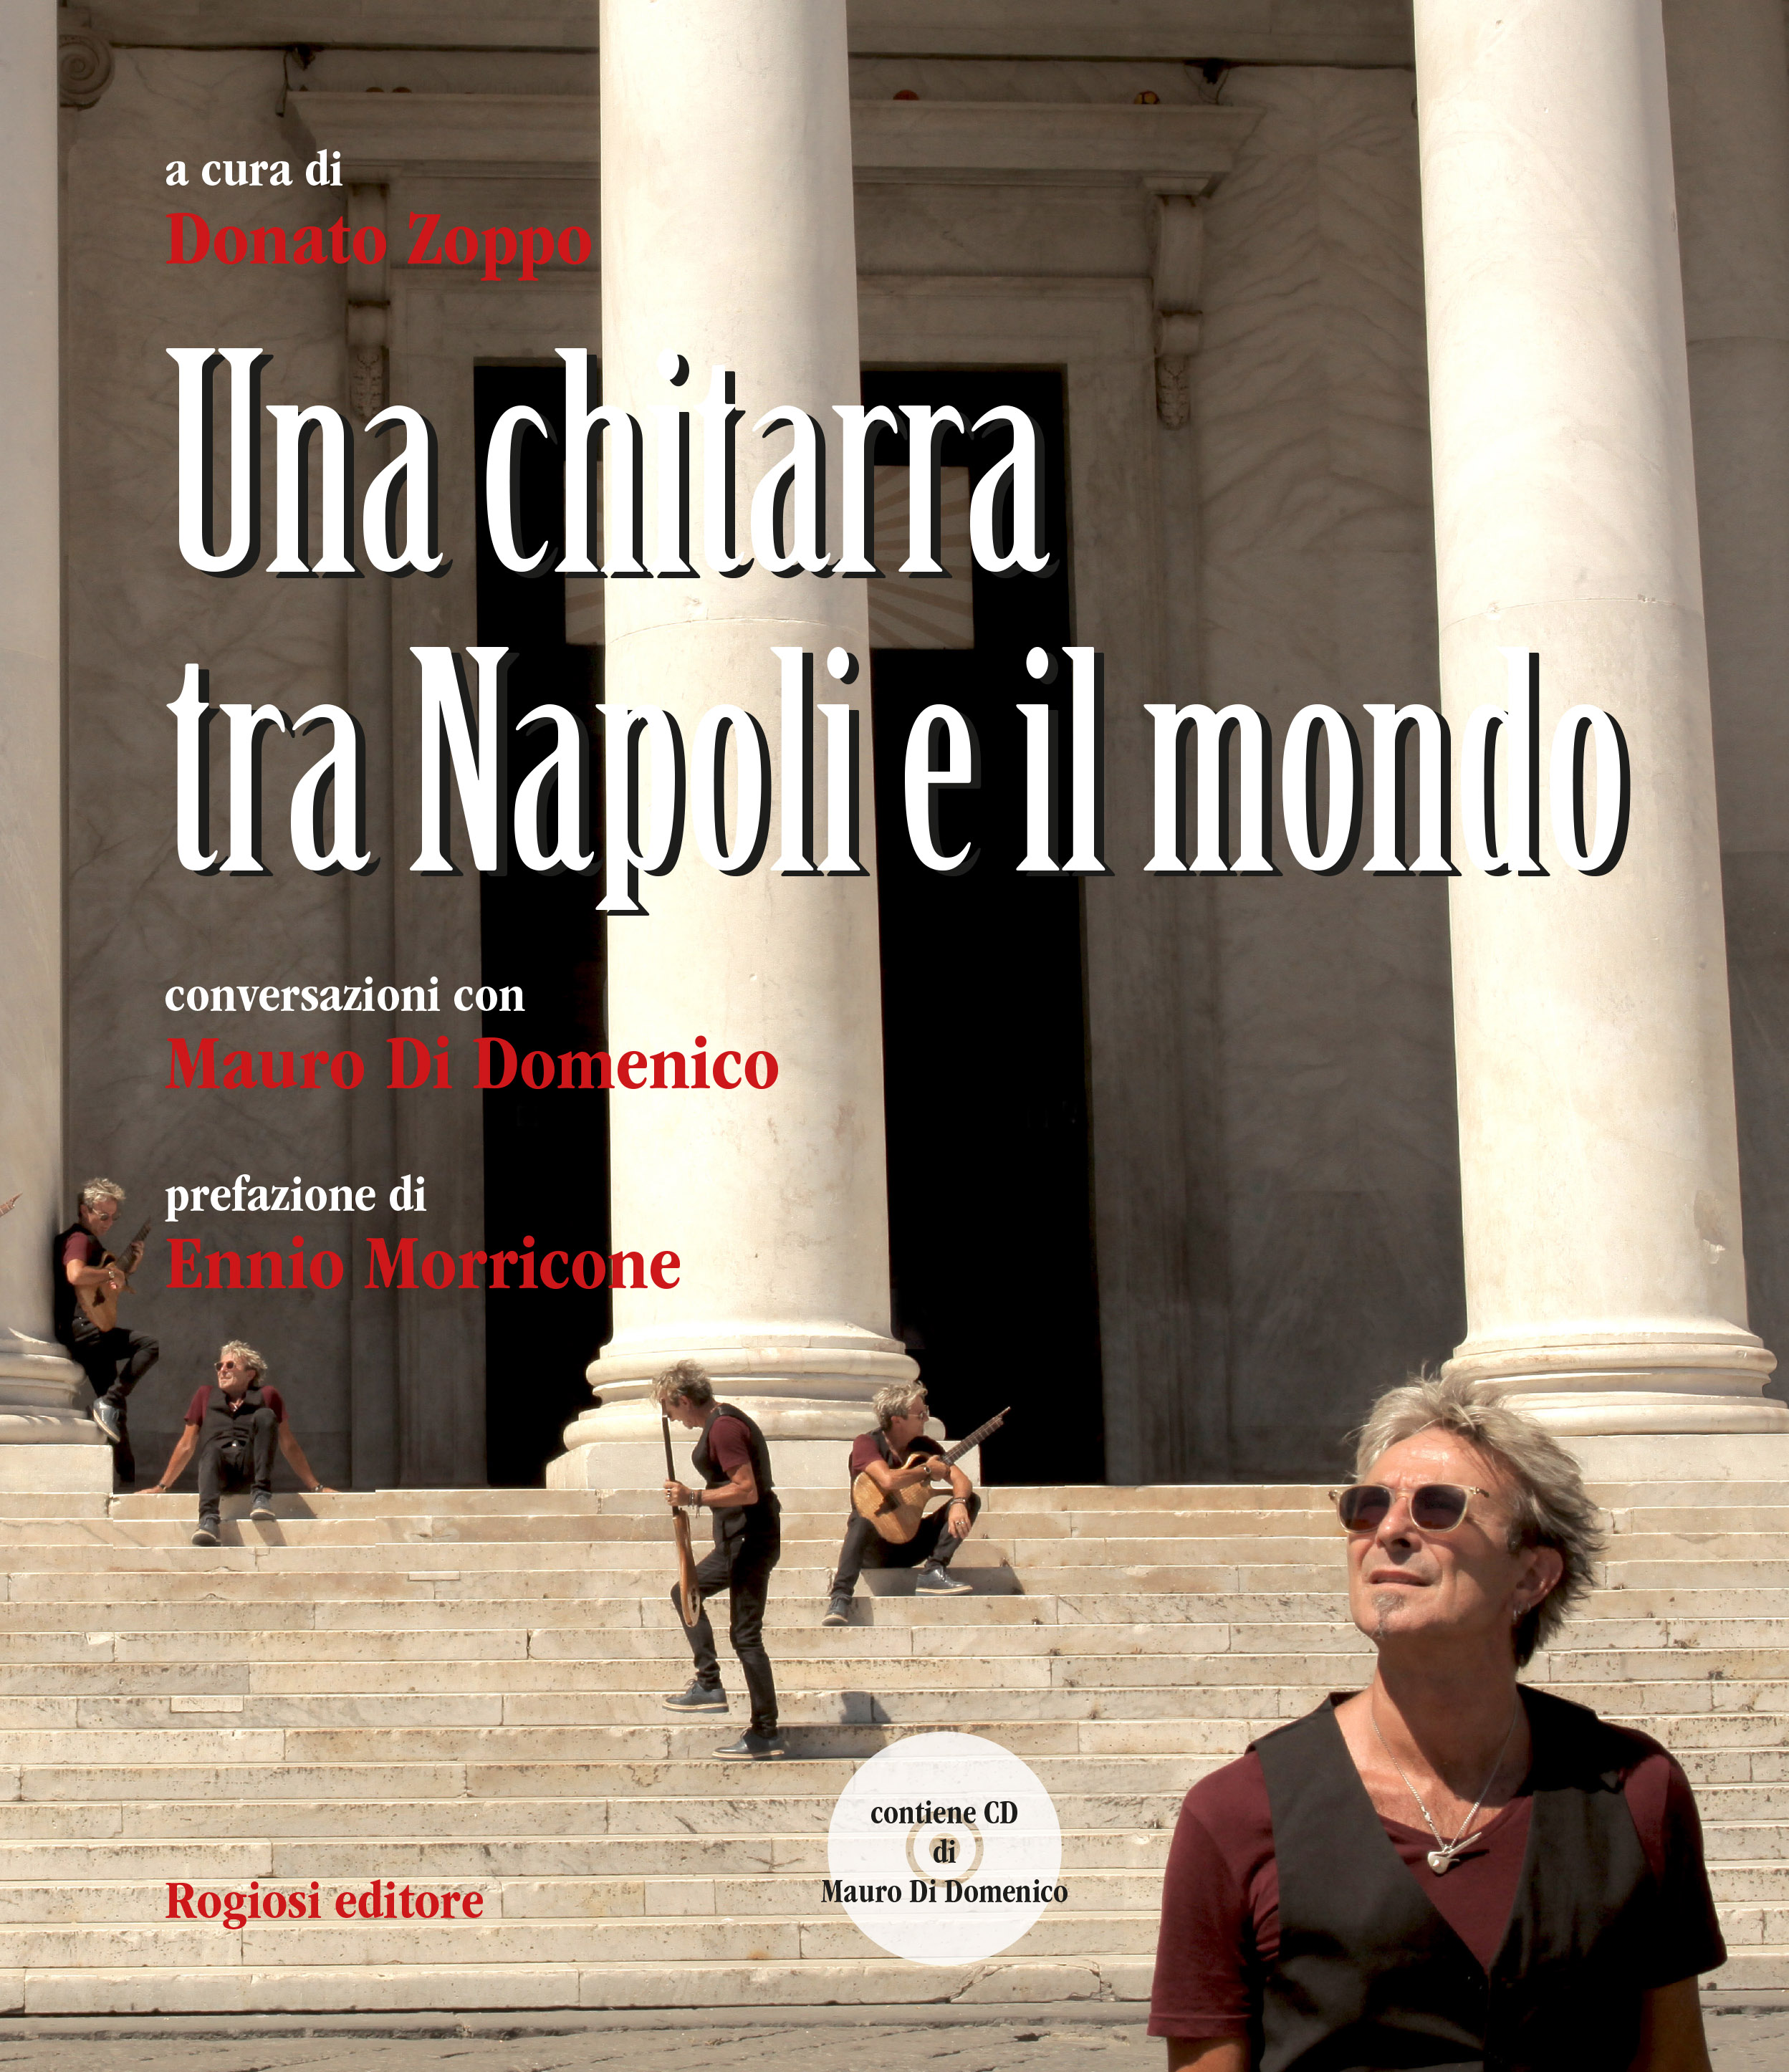  Napoli, presentazione del volume “Una chitarra tra Napoli e il mondo” di Donato Zoppo e Mauro Di Domenico